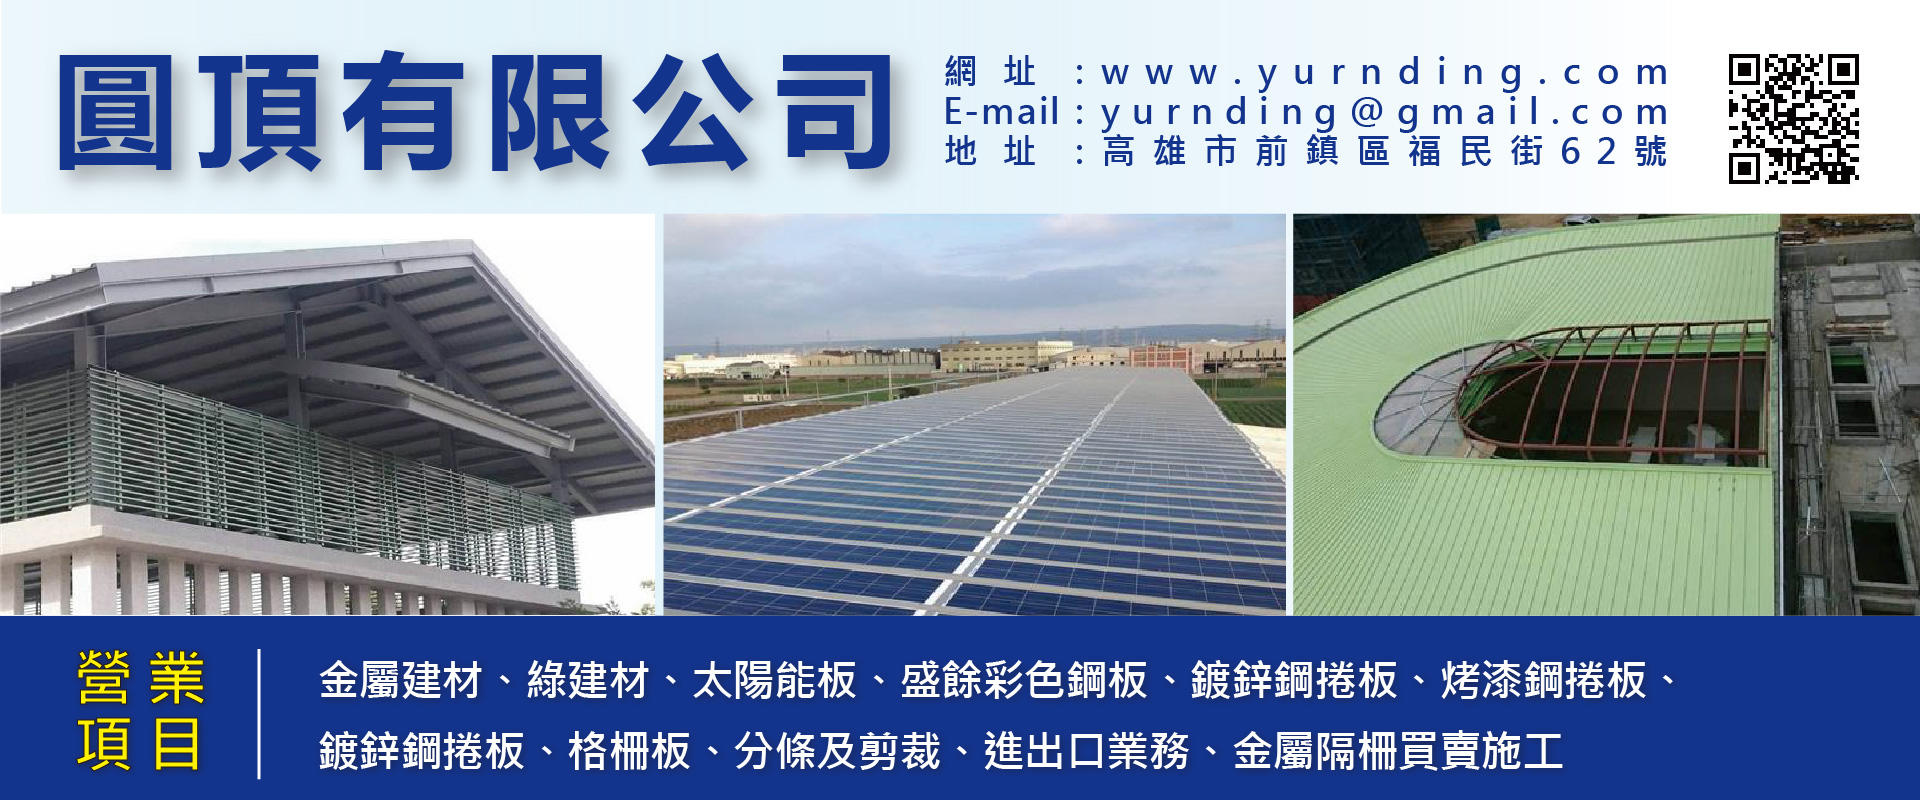 圓頂有限公司 - 金屬建材,太陽能板,綠建材,高雄盛餘彩色鋼板